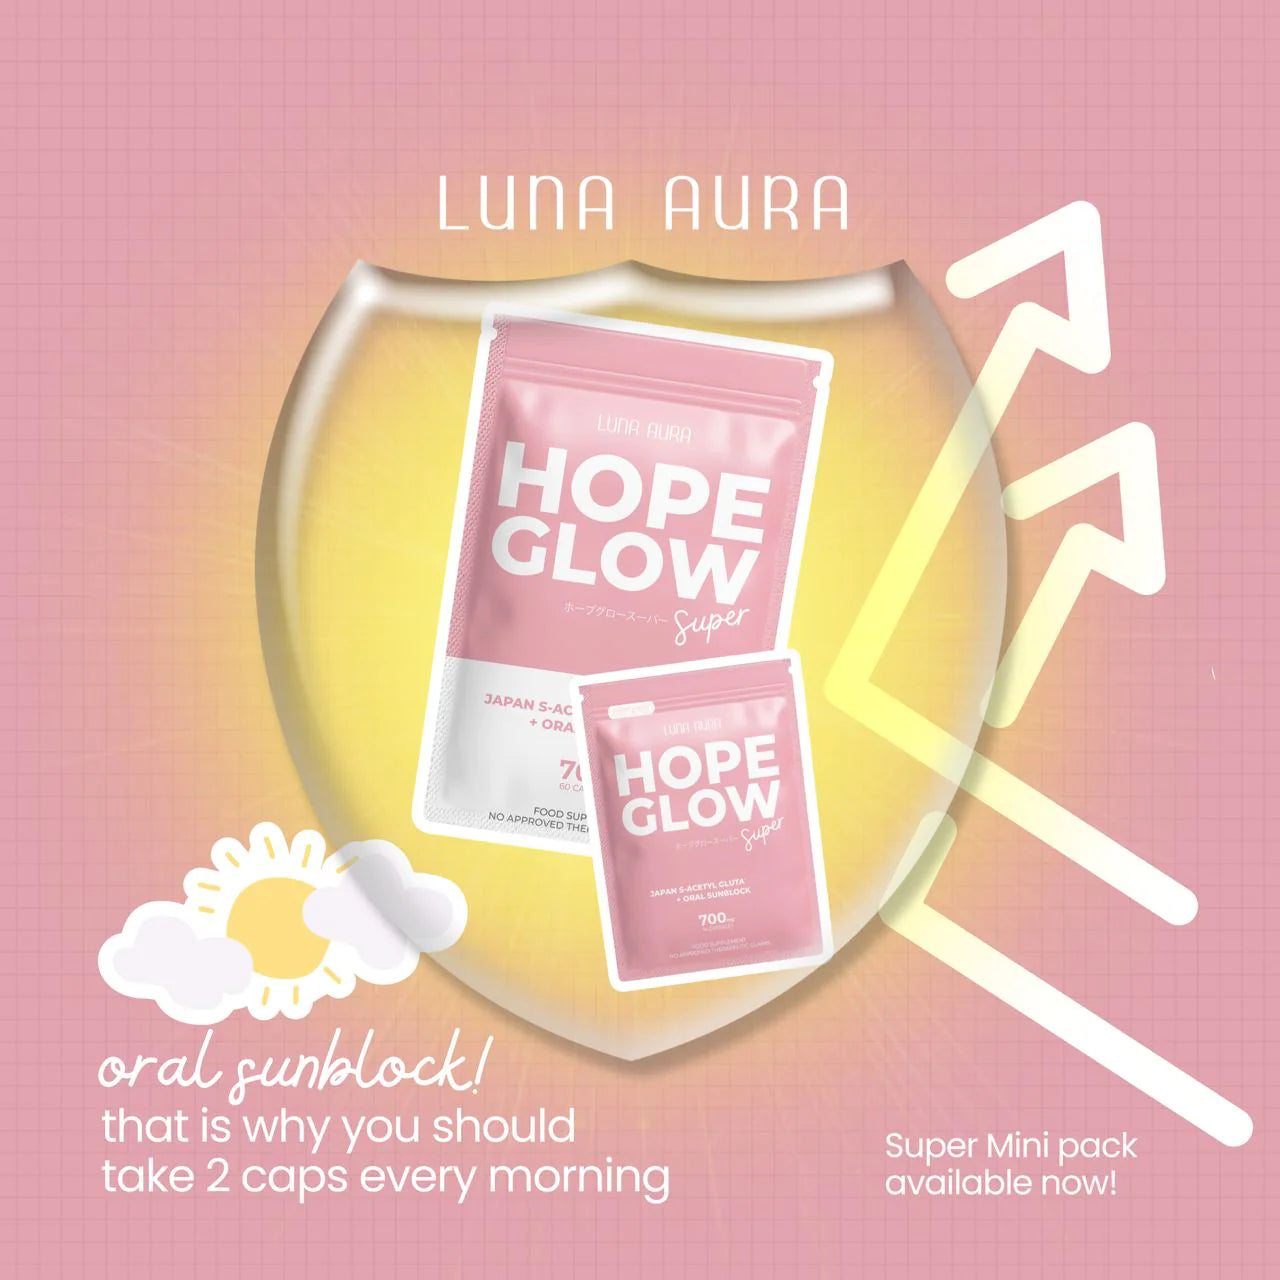 Luna Aura Hope Glow Luna Aura Super (Mini) - NZ/AU